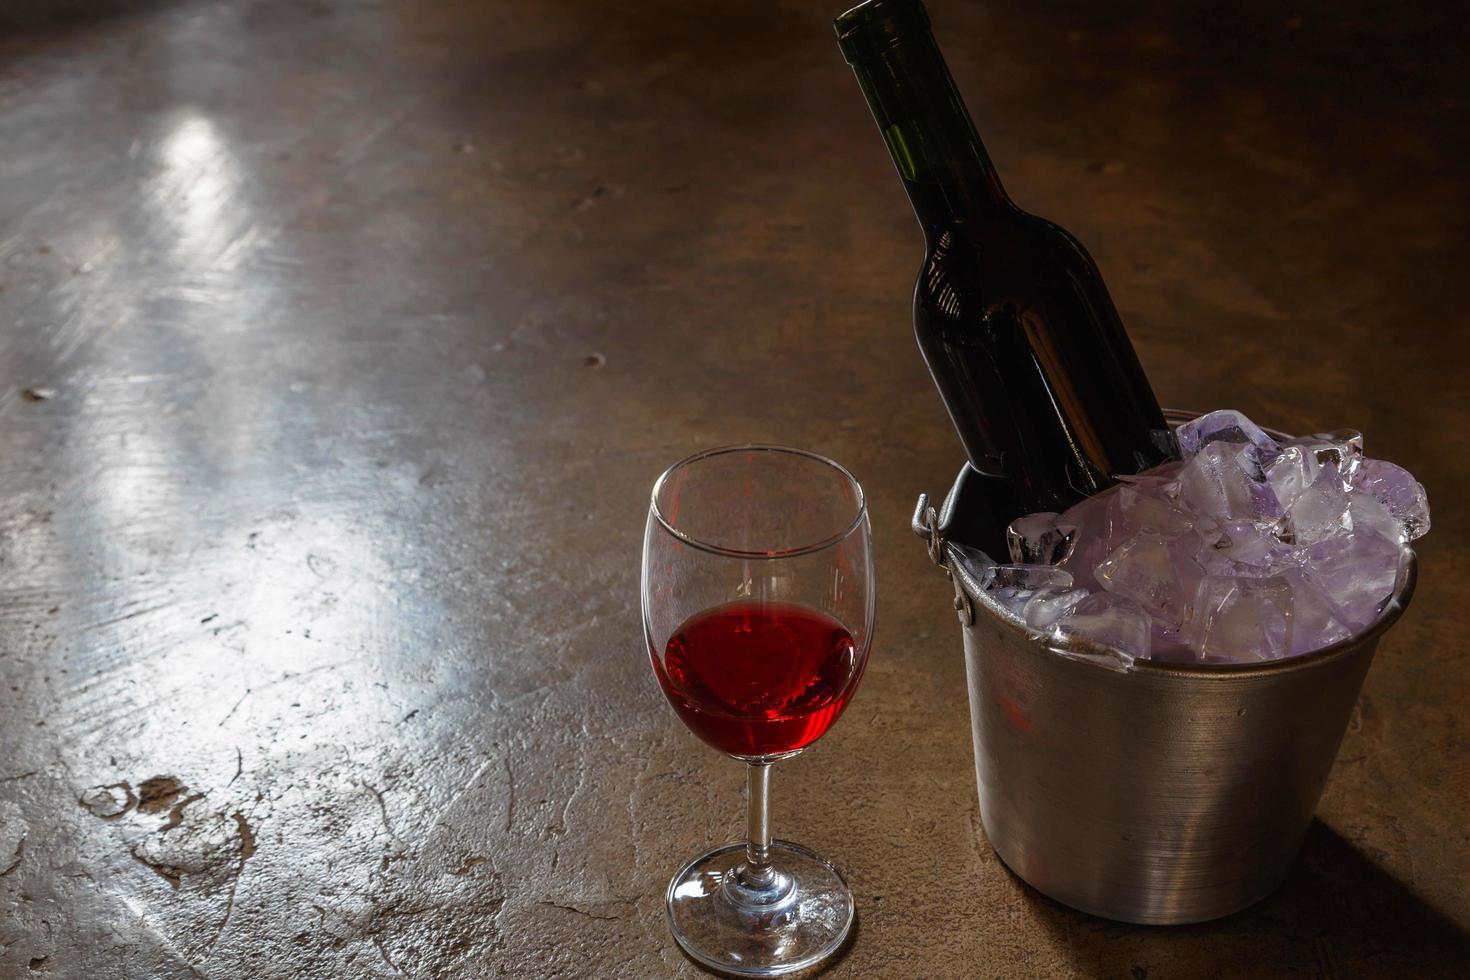 bouteille de vin rouge dans un seau à glace et un verre de vin rouge photo